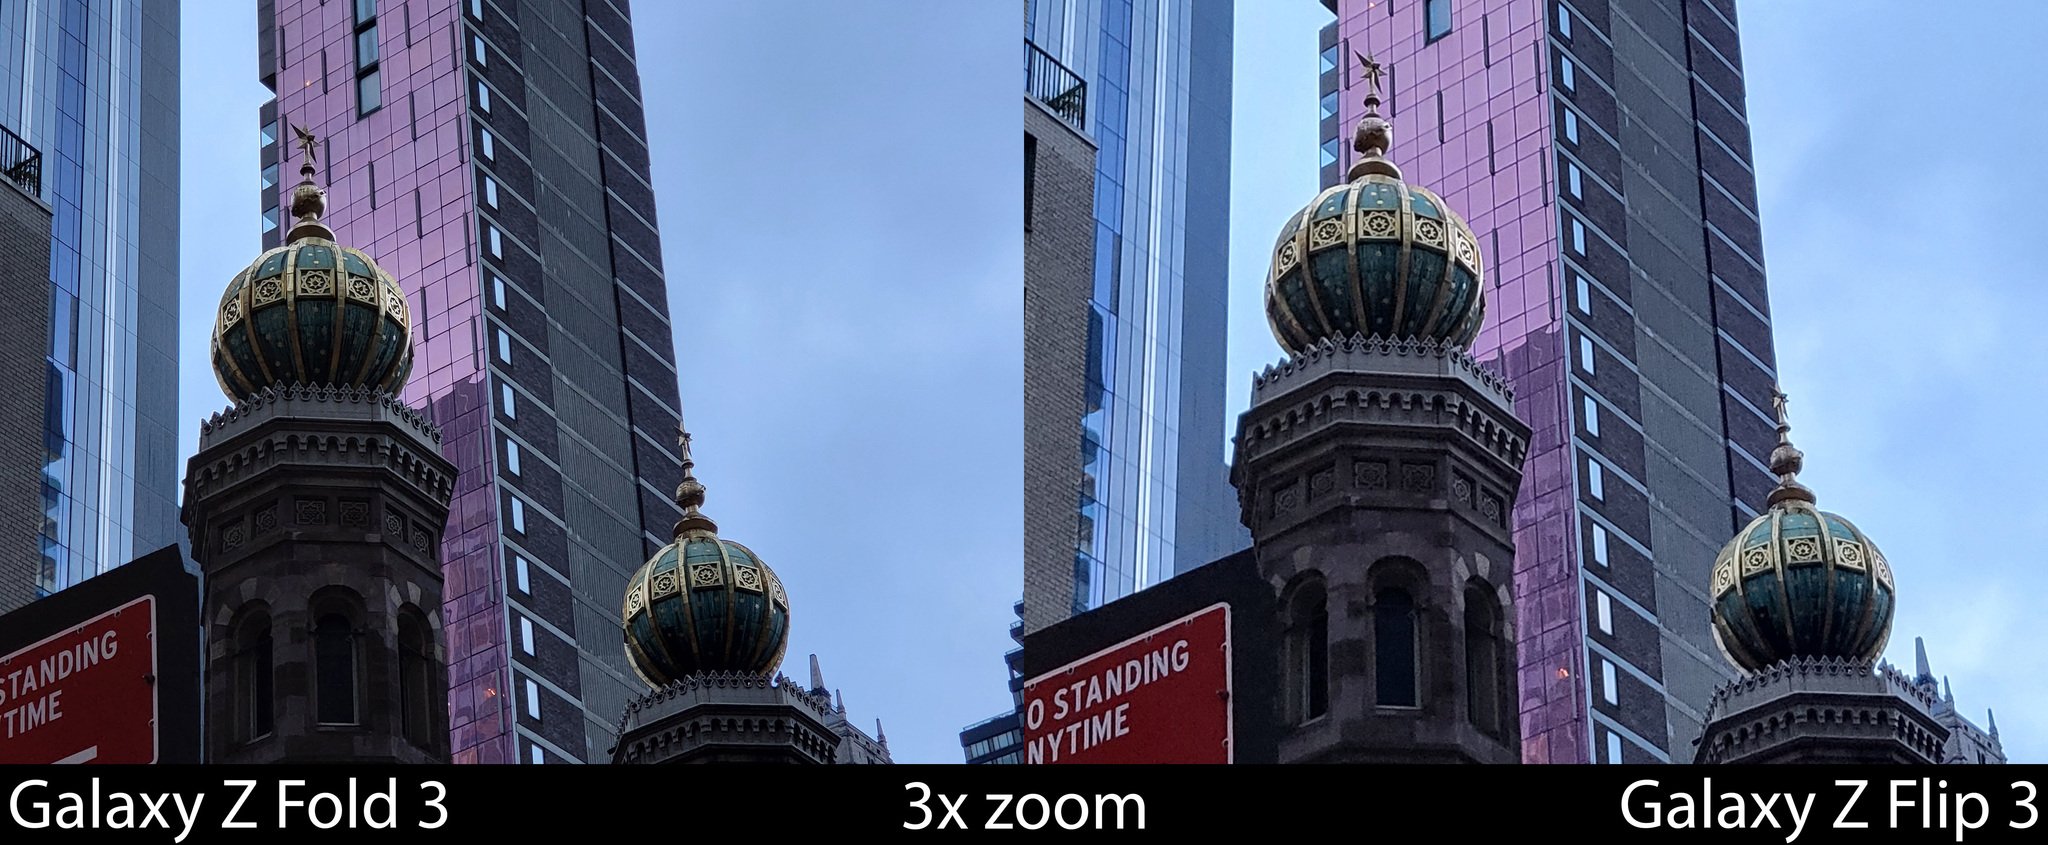 Camera Compare Z Fold 3 Flip 3 Zoom 01 Resize